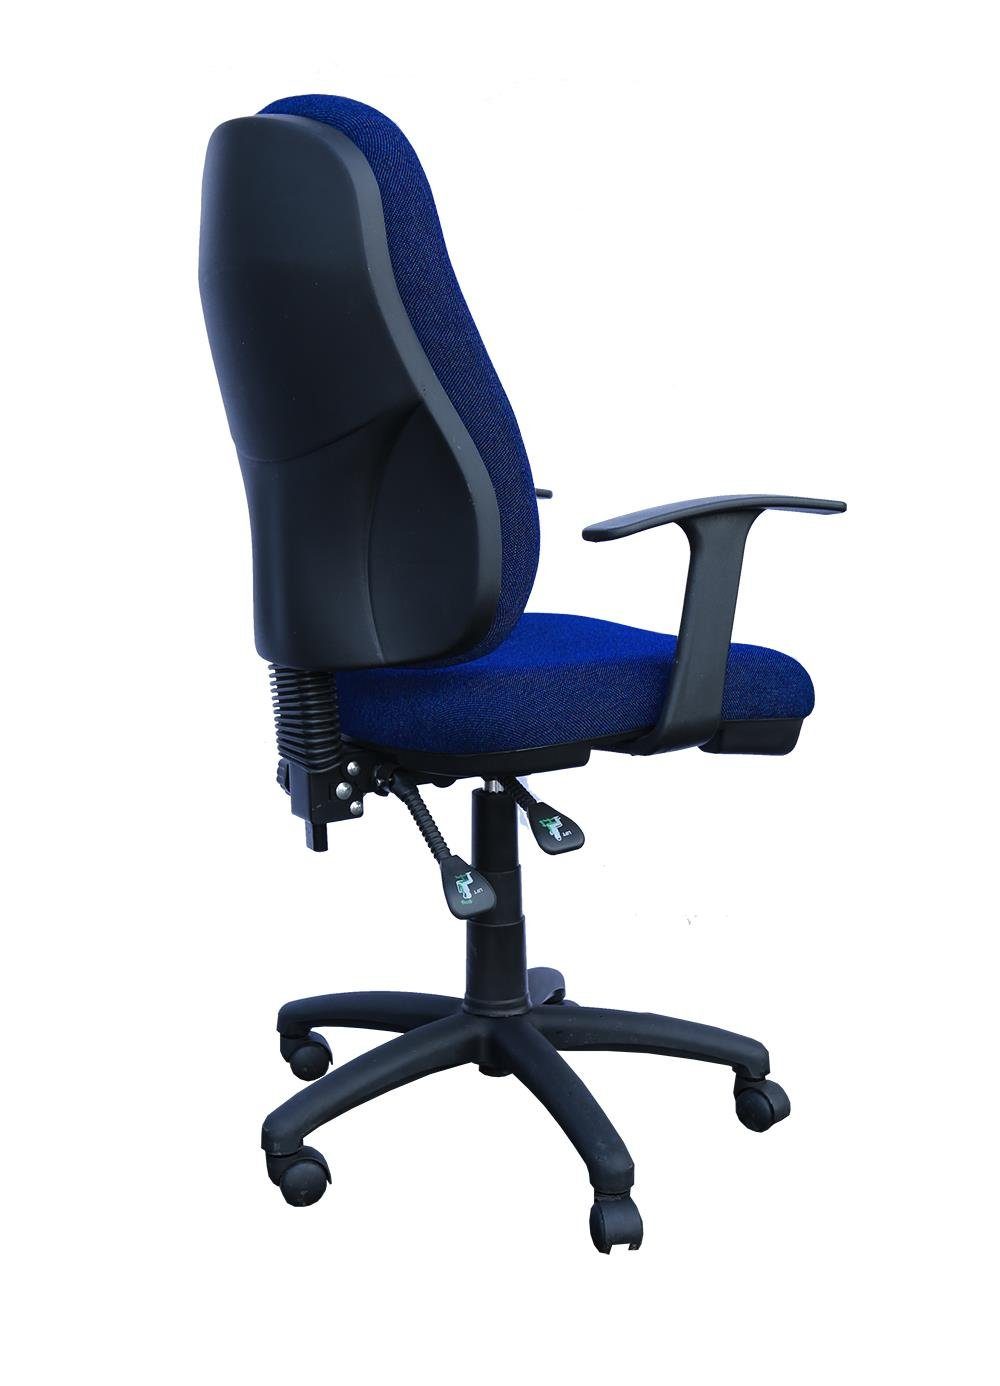 ergonomisch geformt (Bürodrehstuhl Steelboxx Drehstuhl Armlehnen) Bürodrehstuhl mit Bandscheibensitz blau